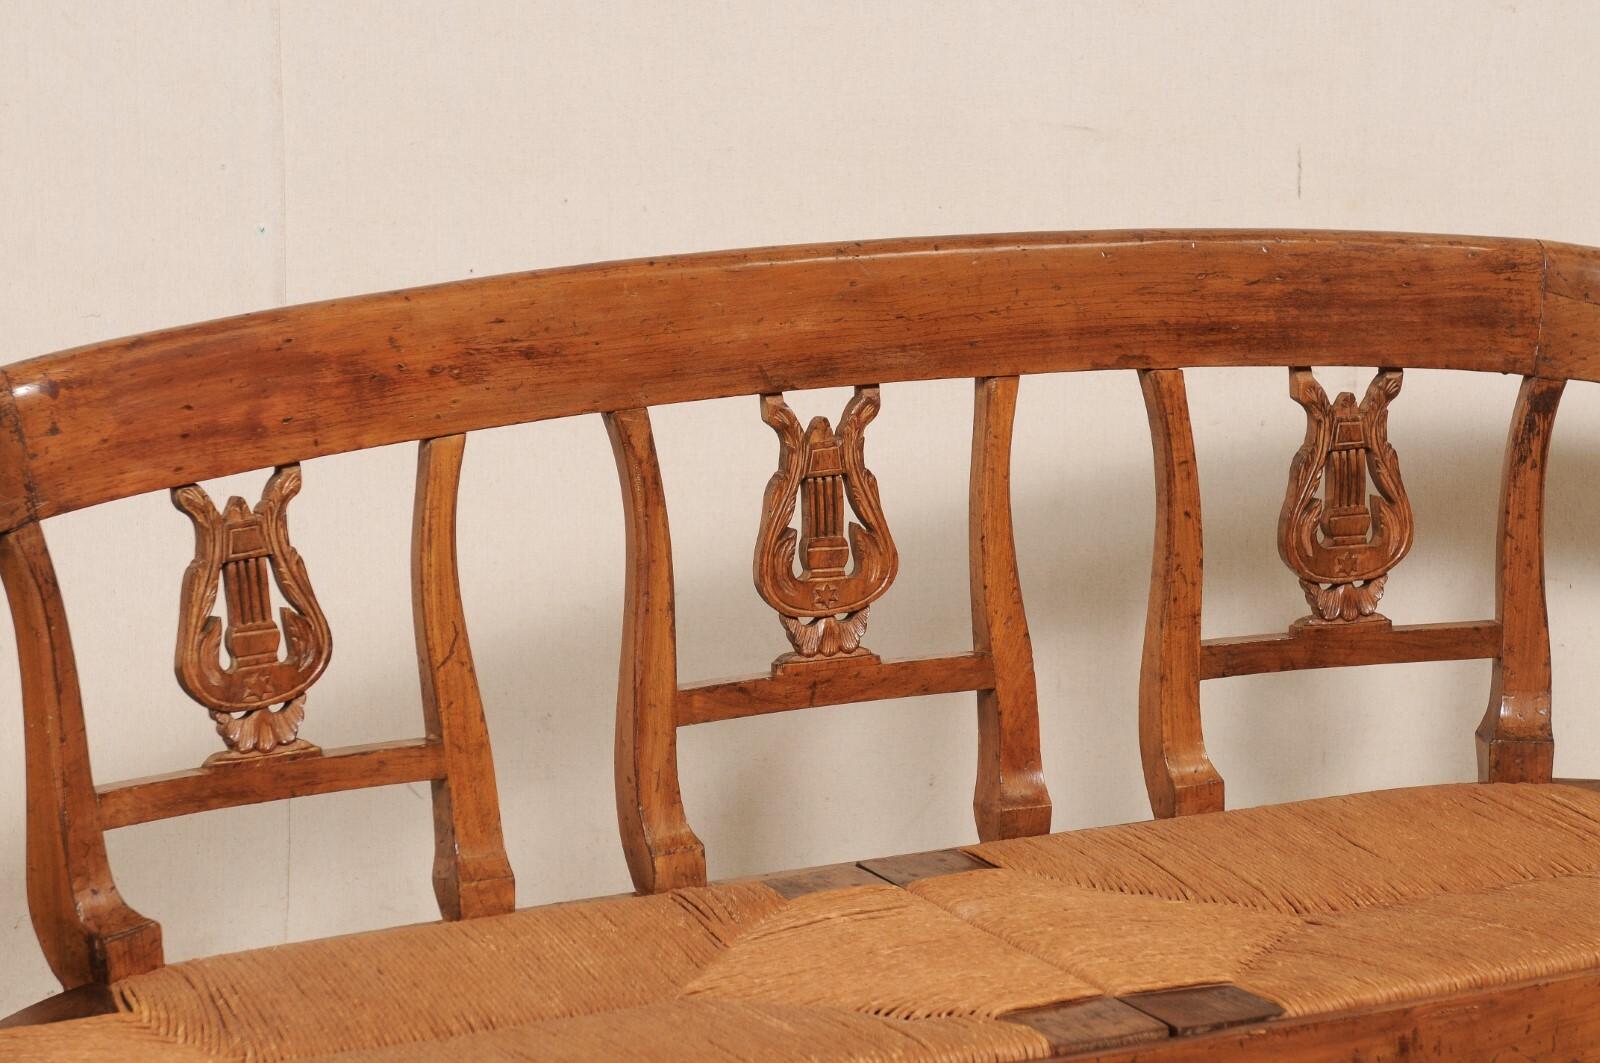 Französische Sofabank aus geschnitztem Holz im neoklassizistischen Stil mit gepolstertem Sitz aus dem 19. Diese antike Bank aus Frankreich ist wunderschön geschnitzt und weist klassizistische Details auf. Sie verfügt über eine anmutig geschwungene